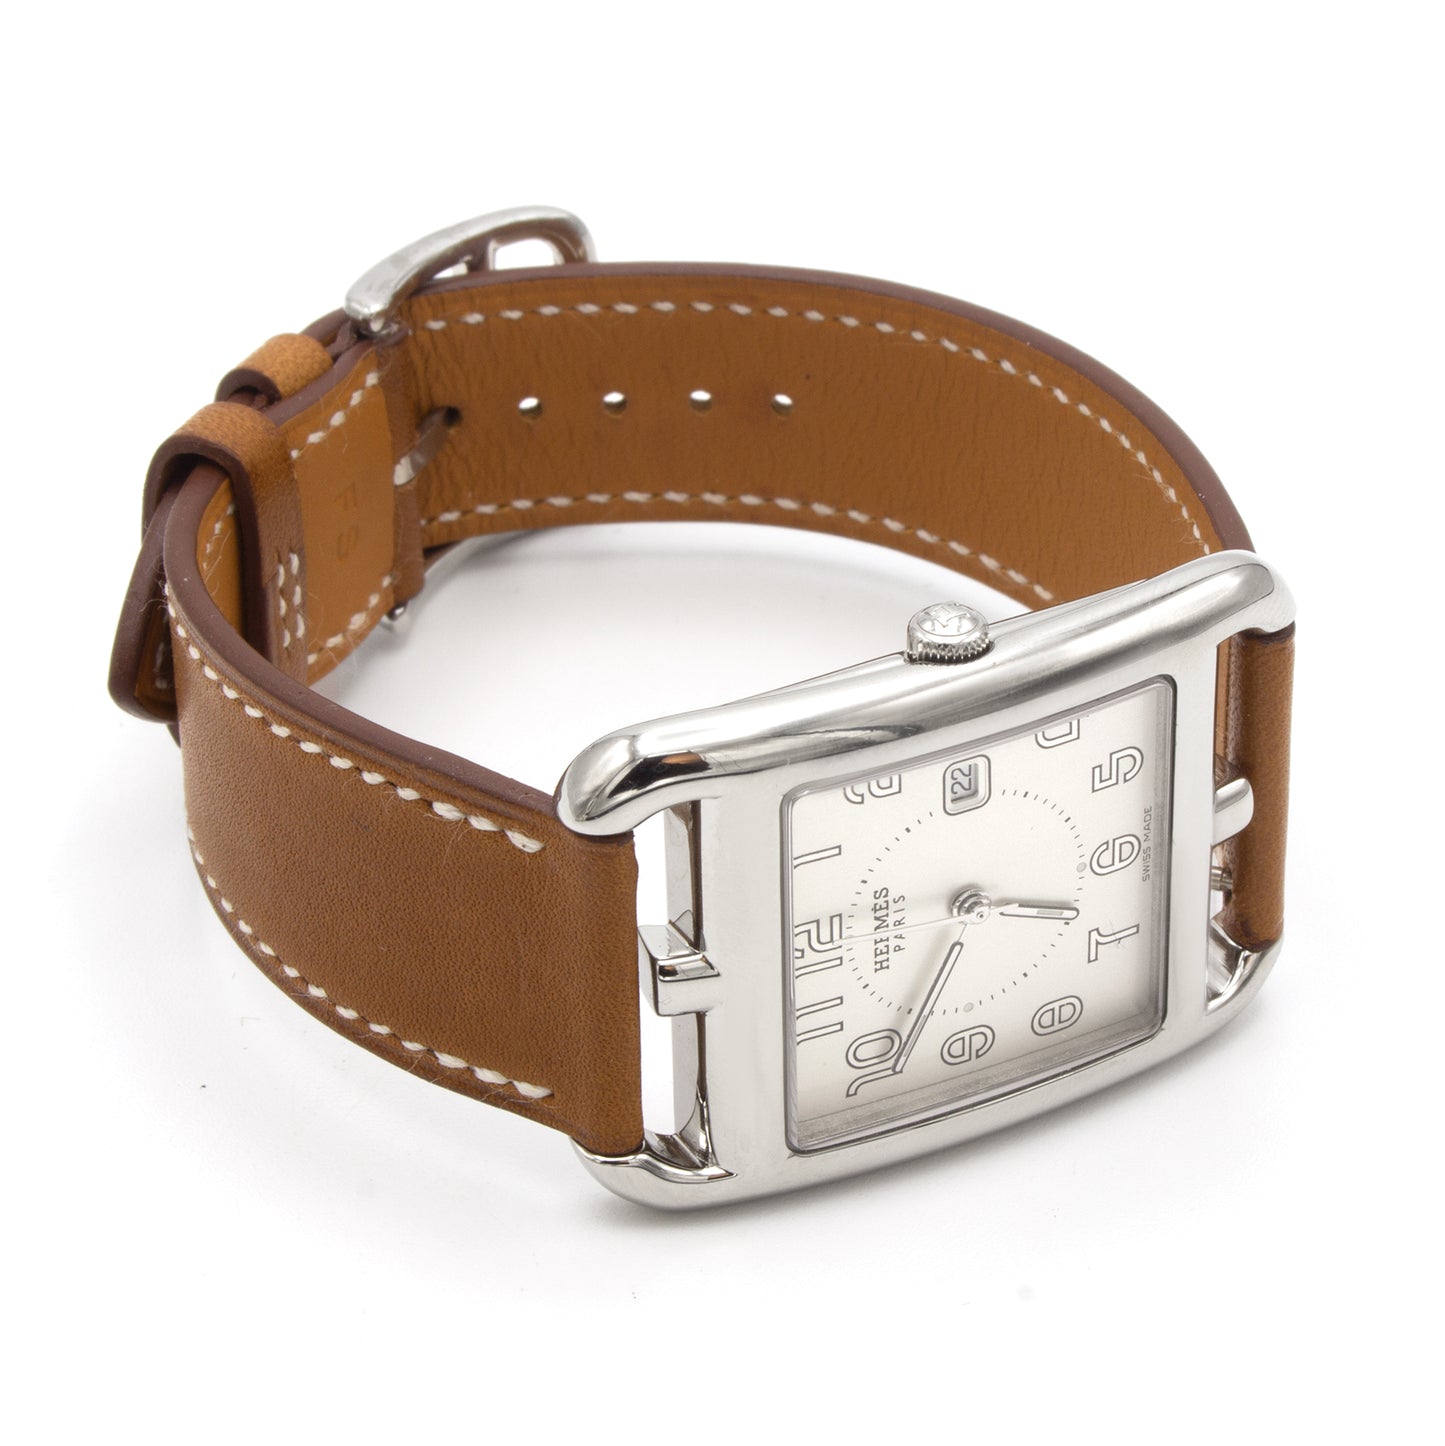 Hermès Cape Cod CC2.710 watch